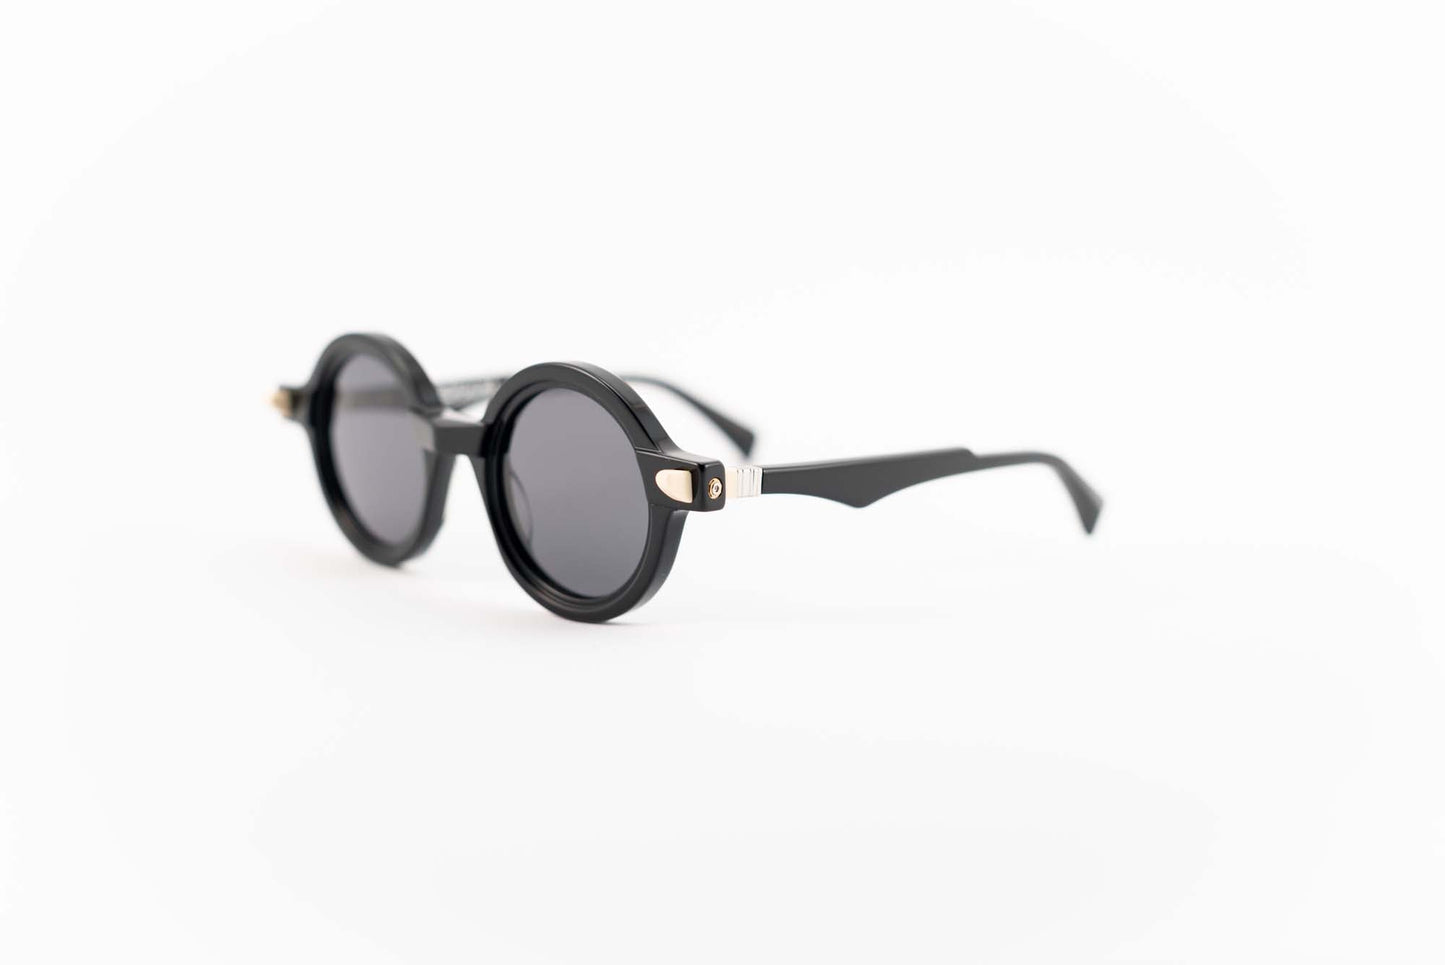 Kuboraum Occhiali da sole Nero / Acetato / Tondo Kuboraum MASKE Q7 BS: occhiale in acetato nero tondo da sole